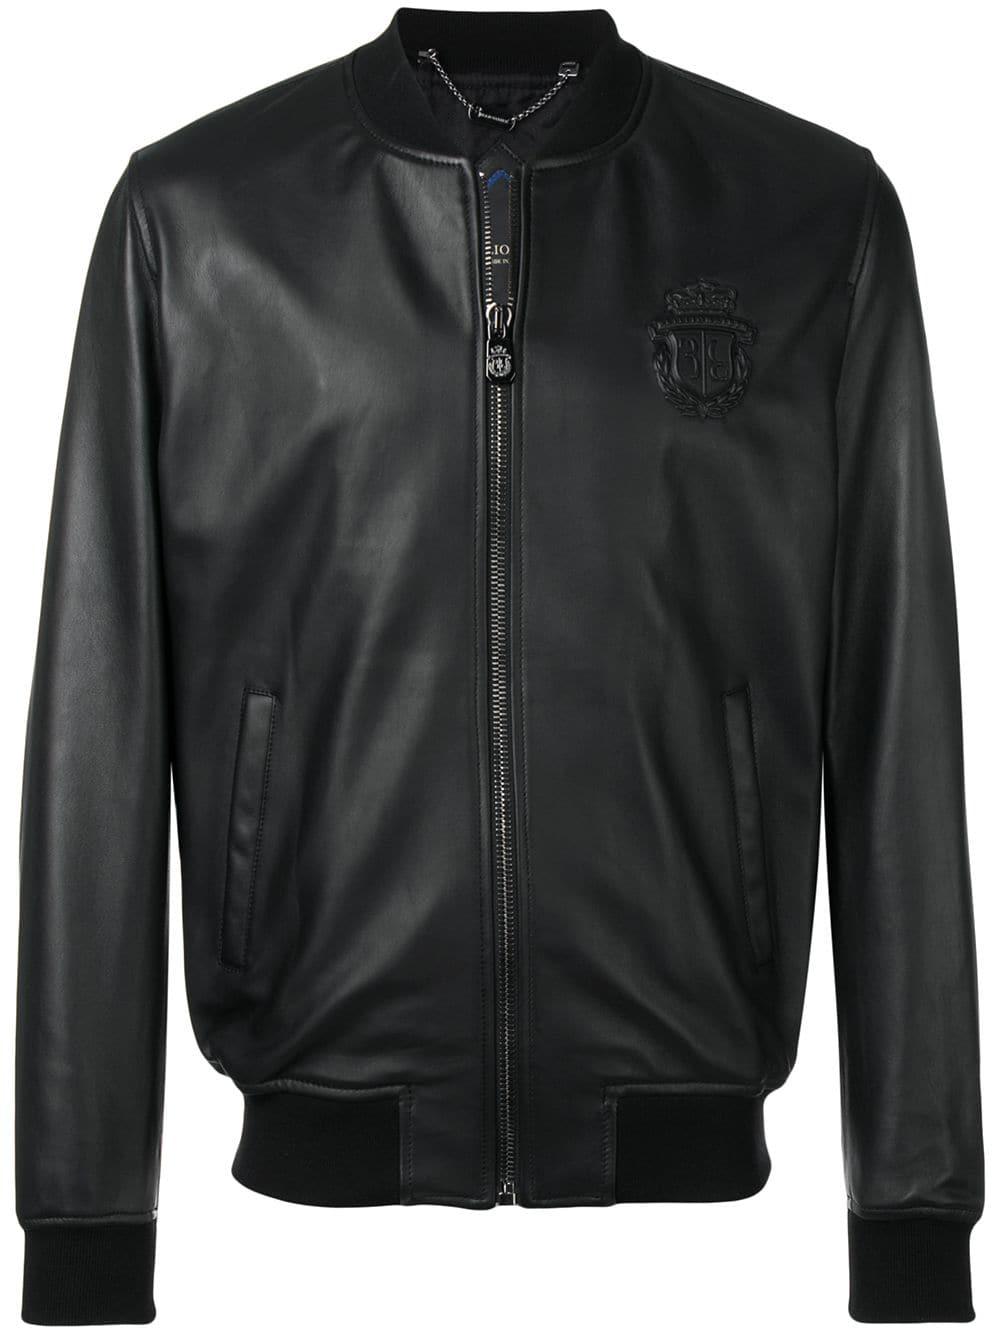 Billionaire Leather Bomber Jacket in Black for Men - Lyst